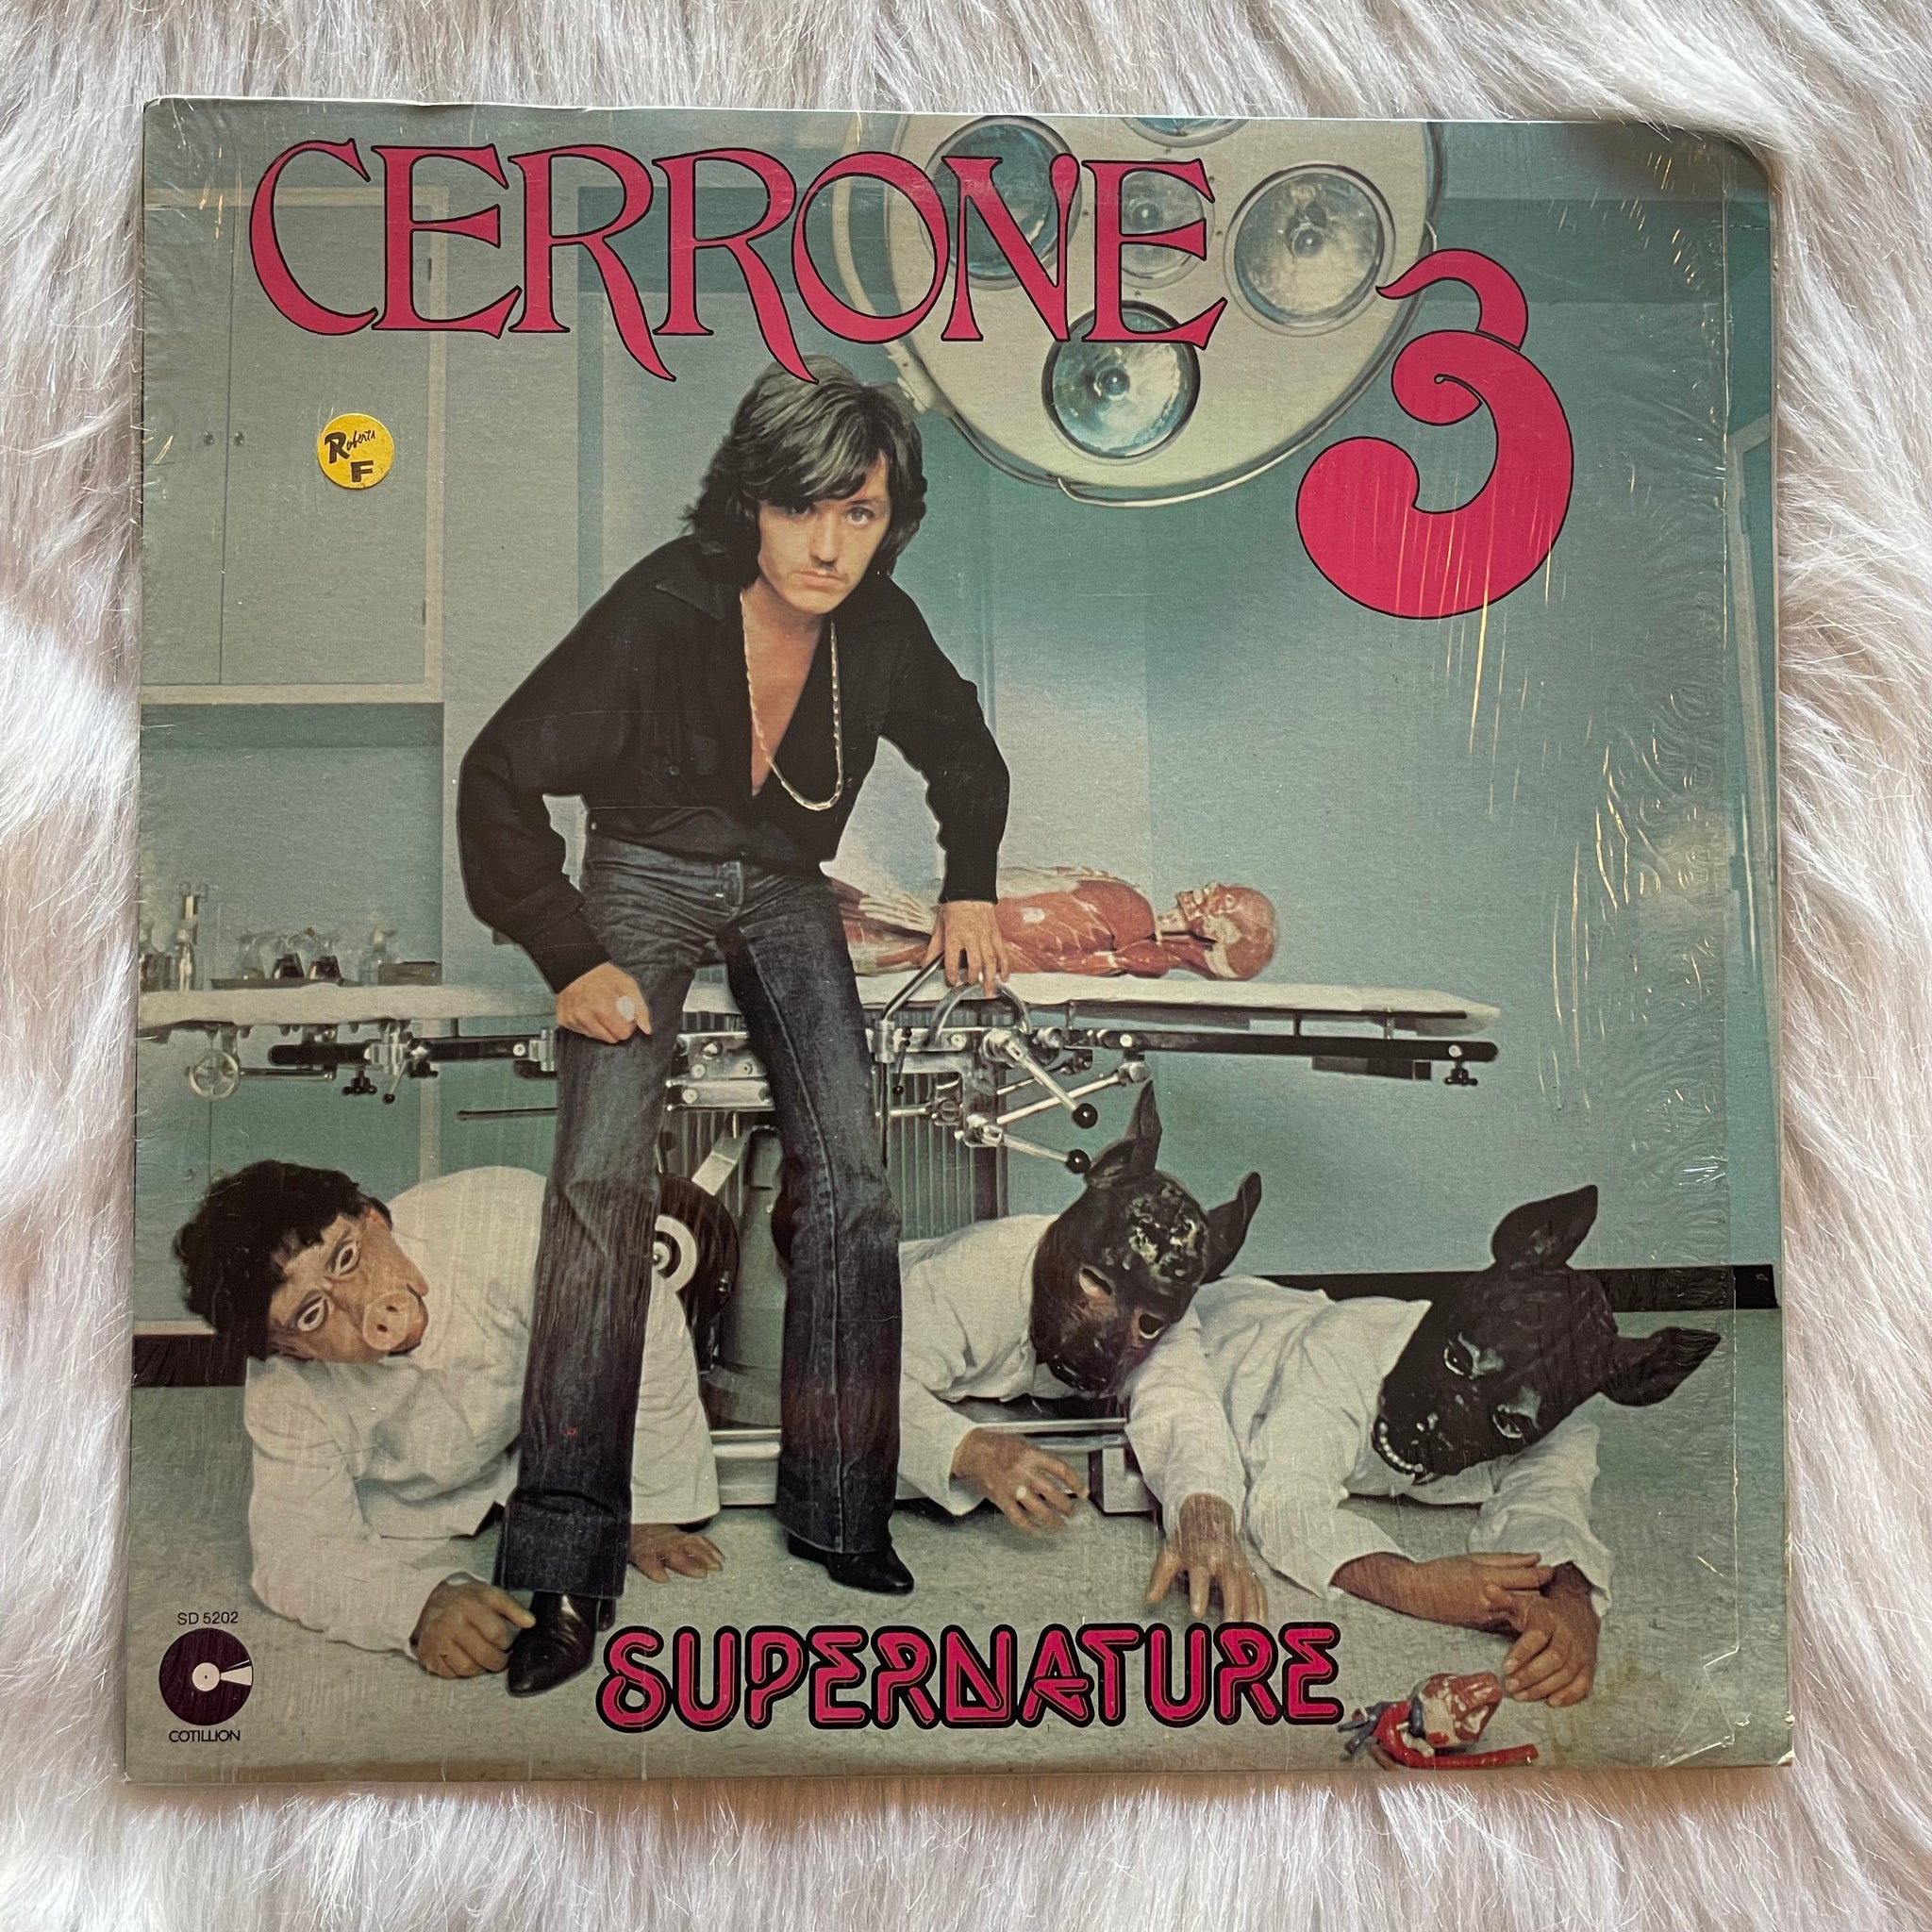 Cerrone-Supernature / Cerrone 3